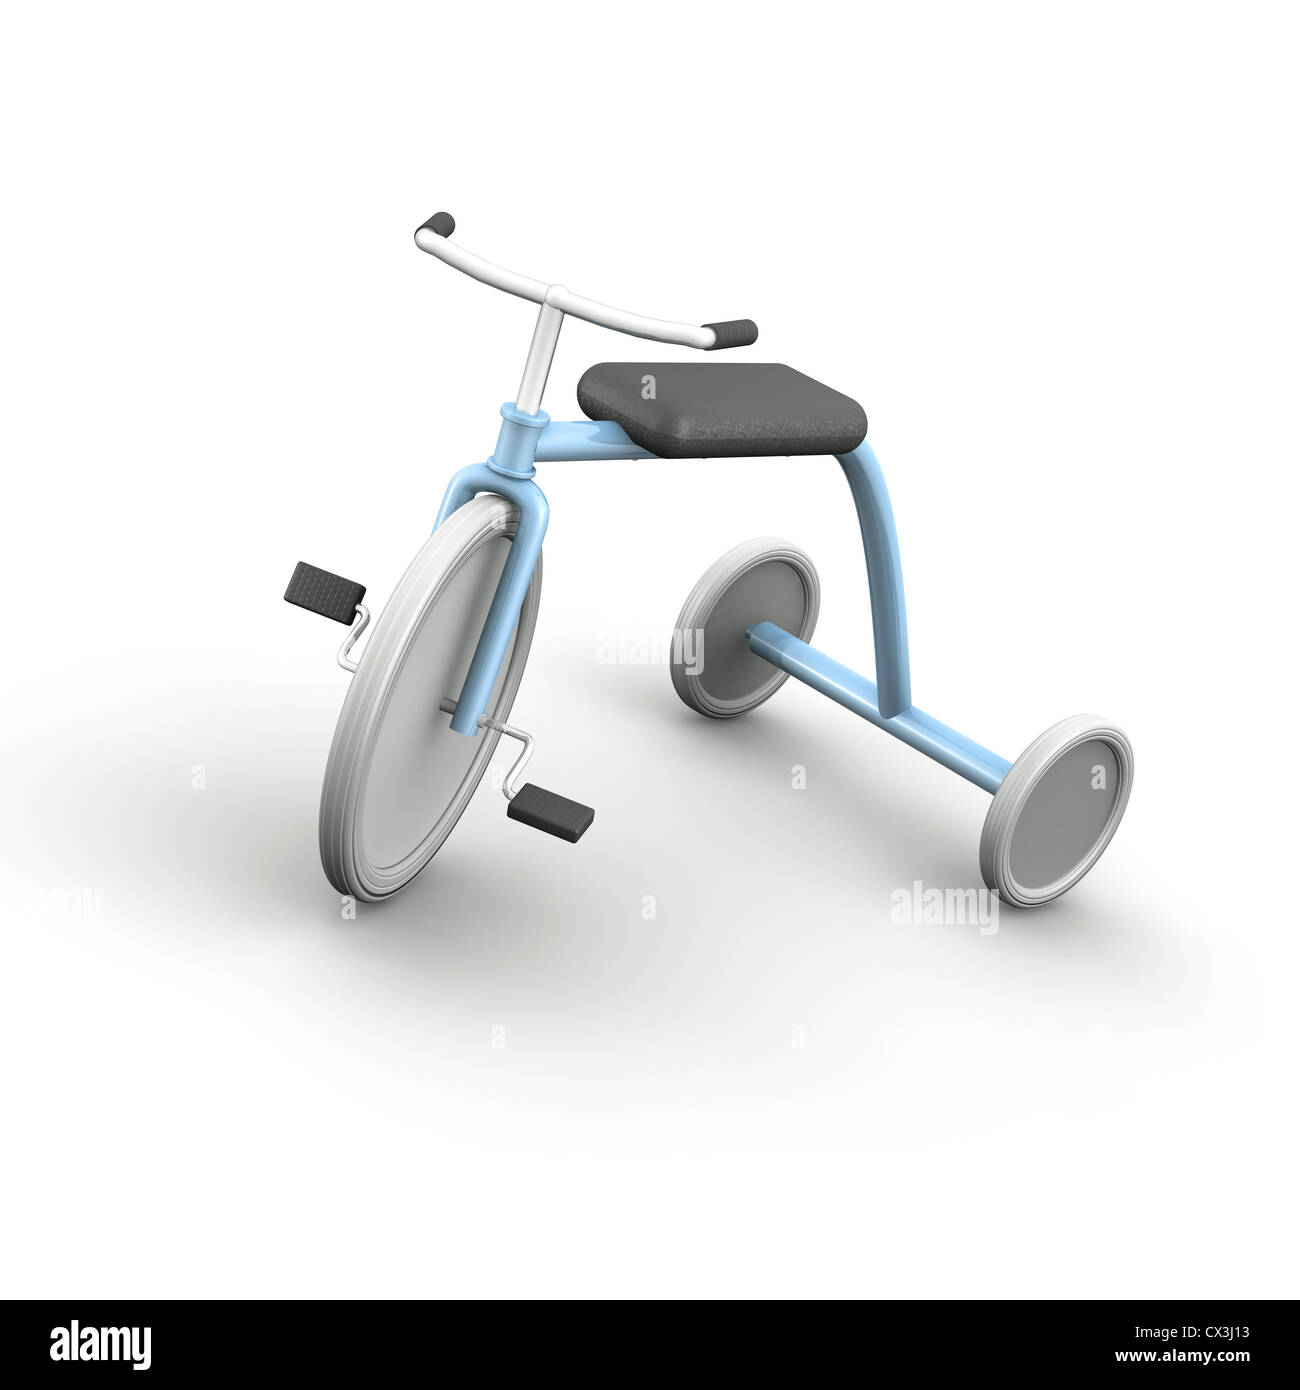 Hellblaues Dreirad rétro mit weissen Reifen auf weissem Hintergrund - un tricycle bleu avec roues blanc sur fond blanc Banque D'Images